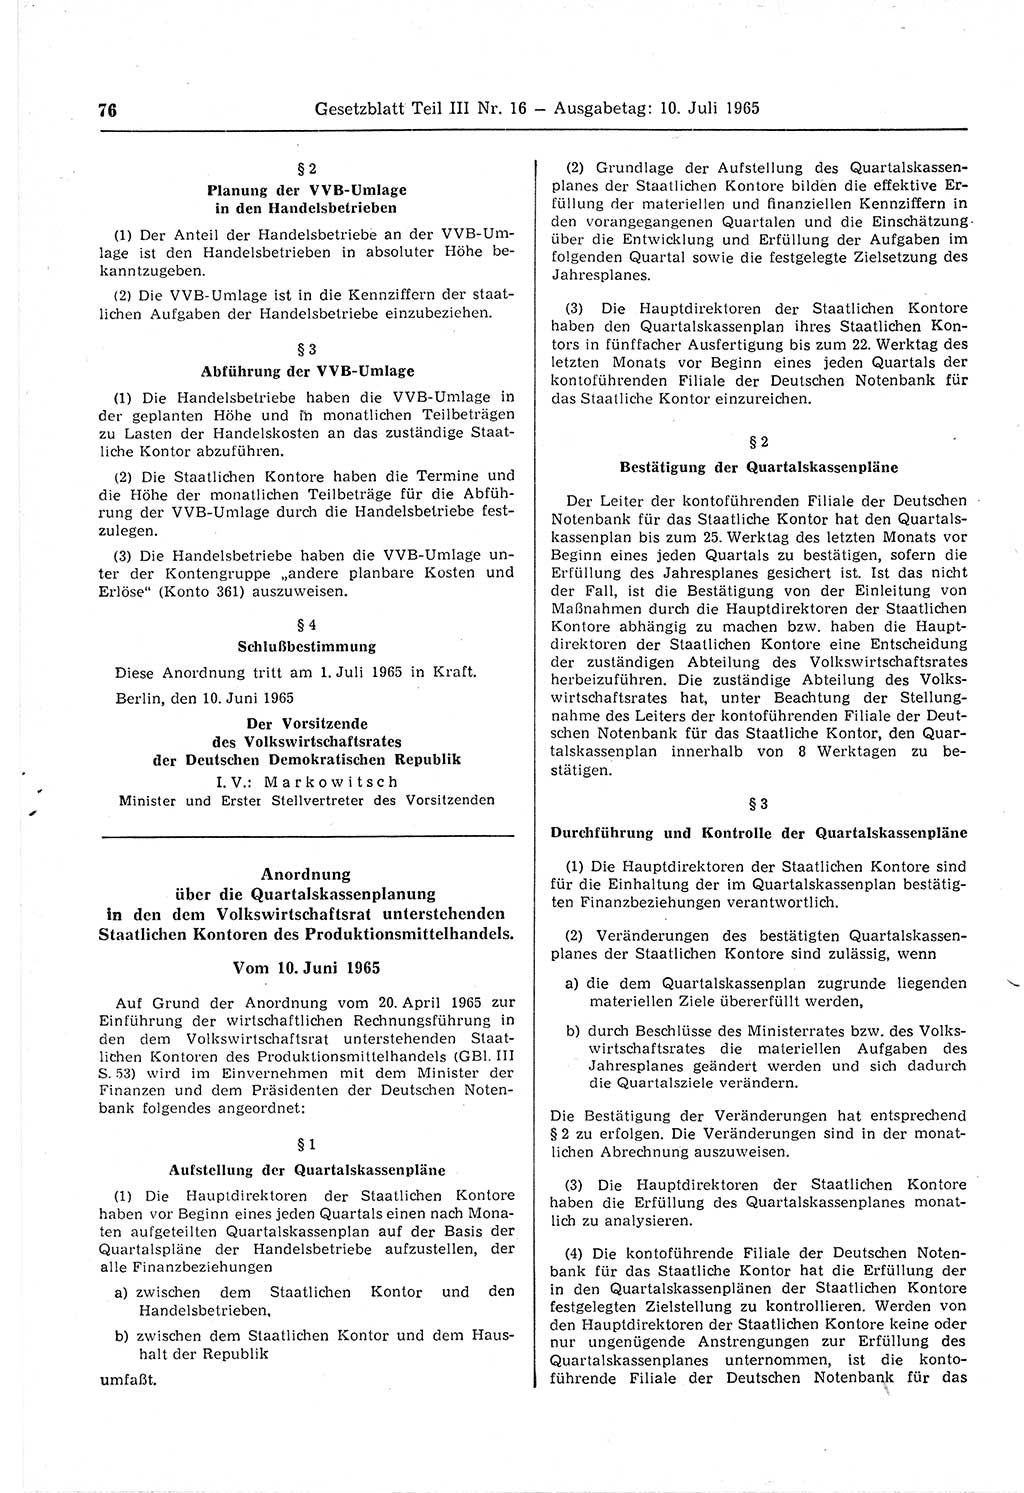 Gesetzblatt (GBl.) der Deutschen Demokratischen Republik (DDR) Teil ⅠⅠⅠ 1965, Seite 76 (GBl. DDR ⅠⅠⅠ 1965, S. 76)